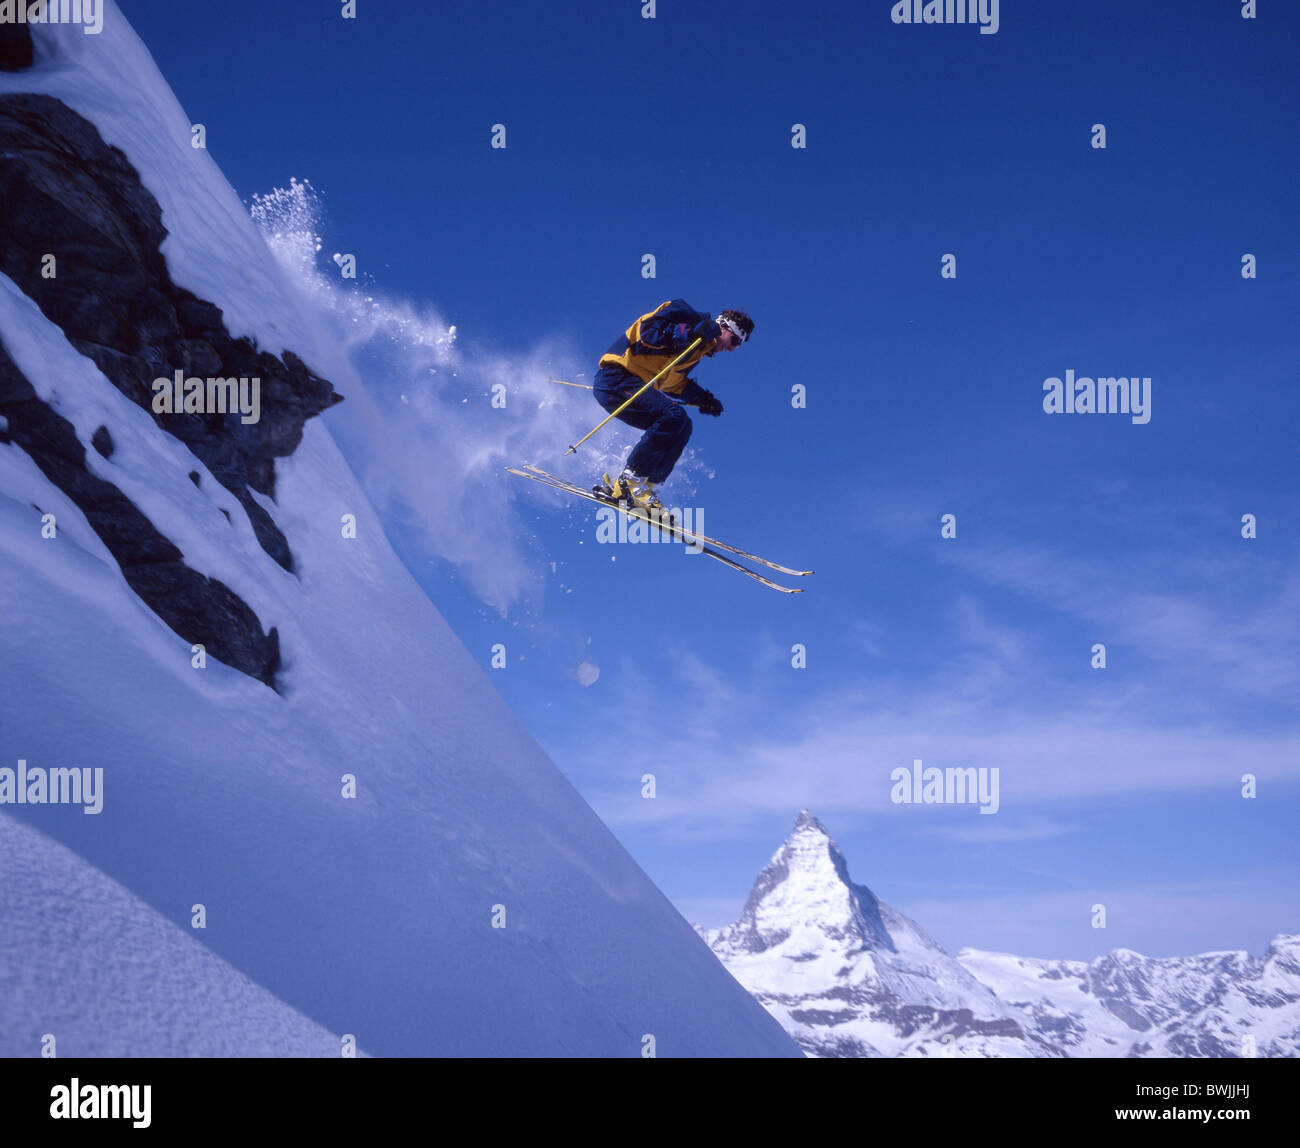 Skifahren Ski Sprung Aktion Steilhang Freeride Tiefschnee Berge Alpen Schnee Wintersport Wintersport Stockfoto